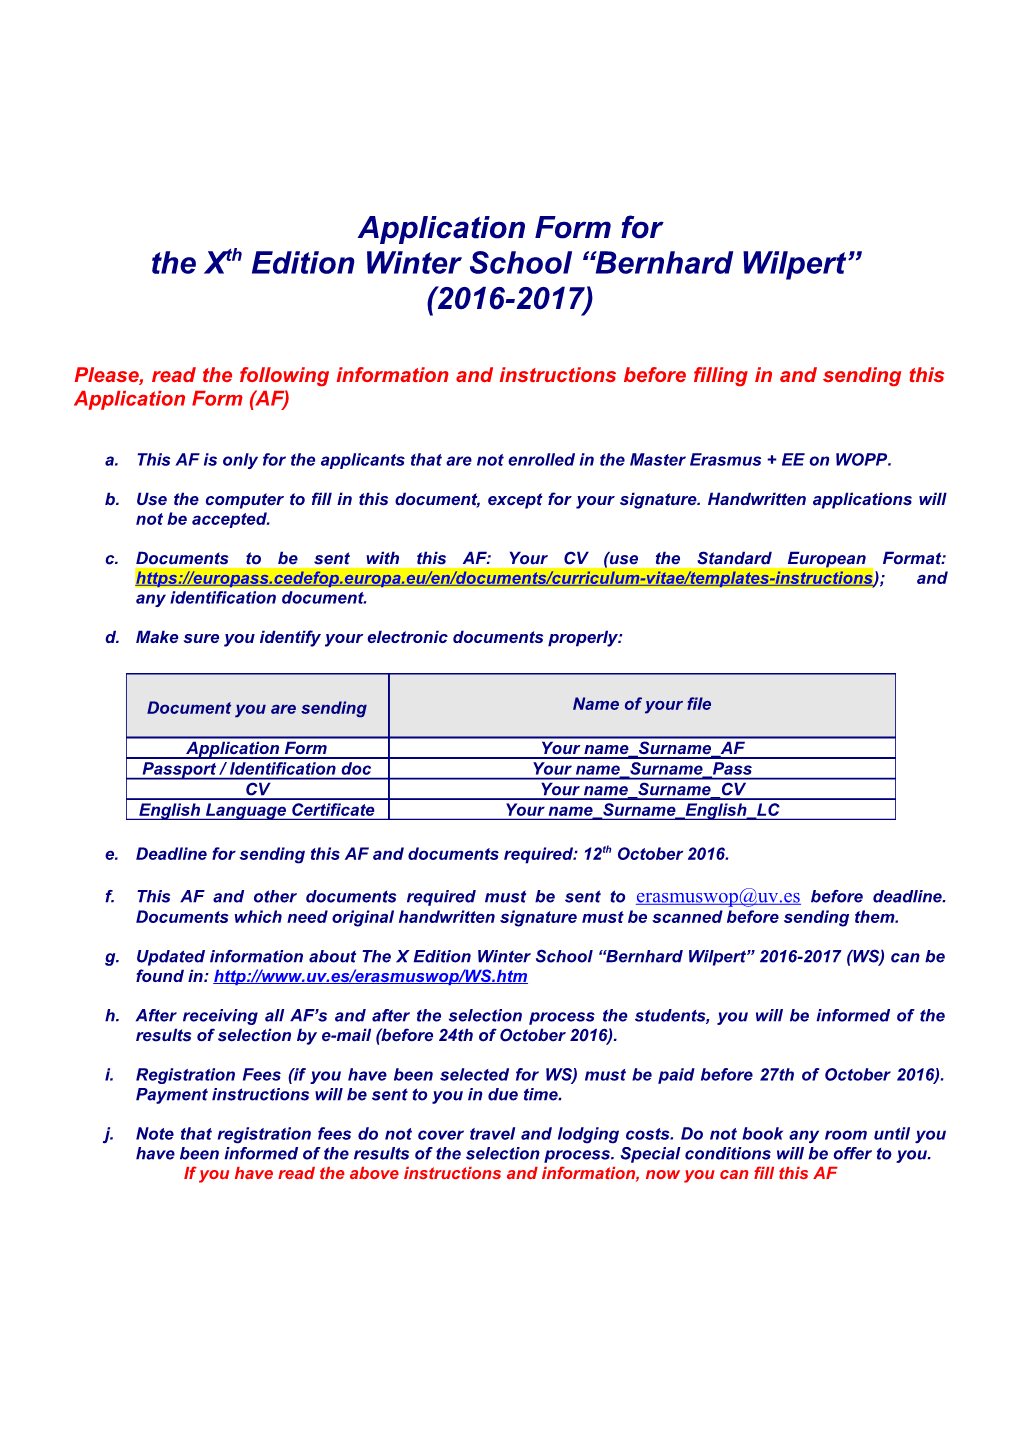 The Xthedition Winter School Bernhard Wilpert